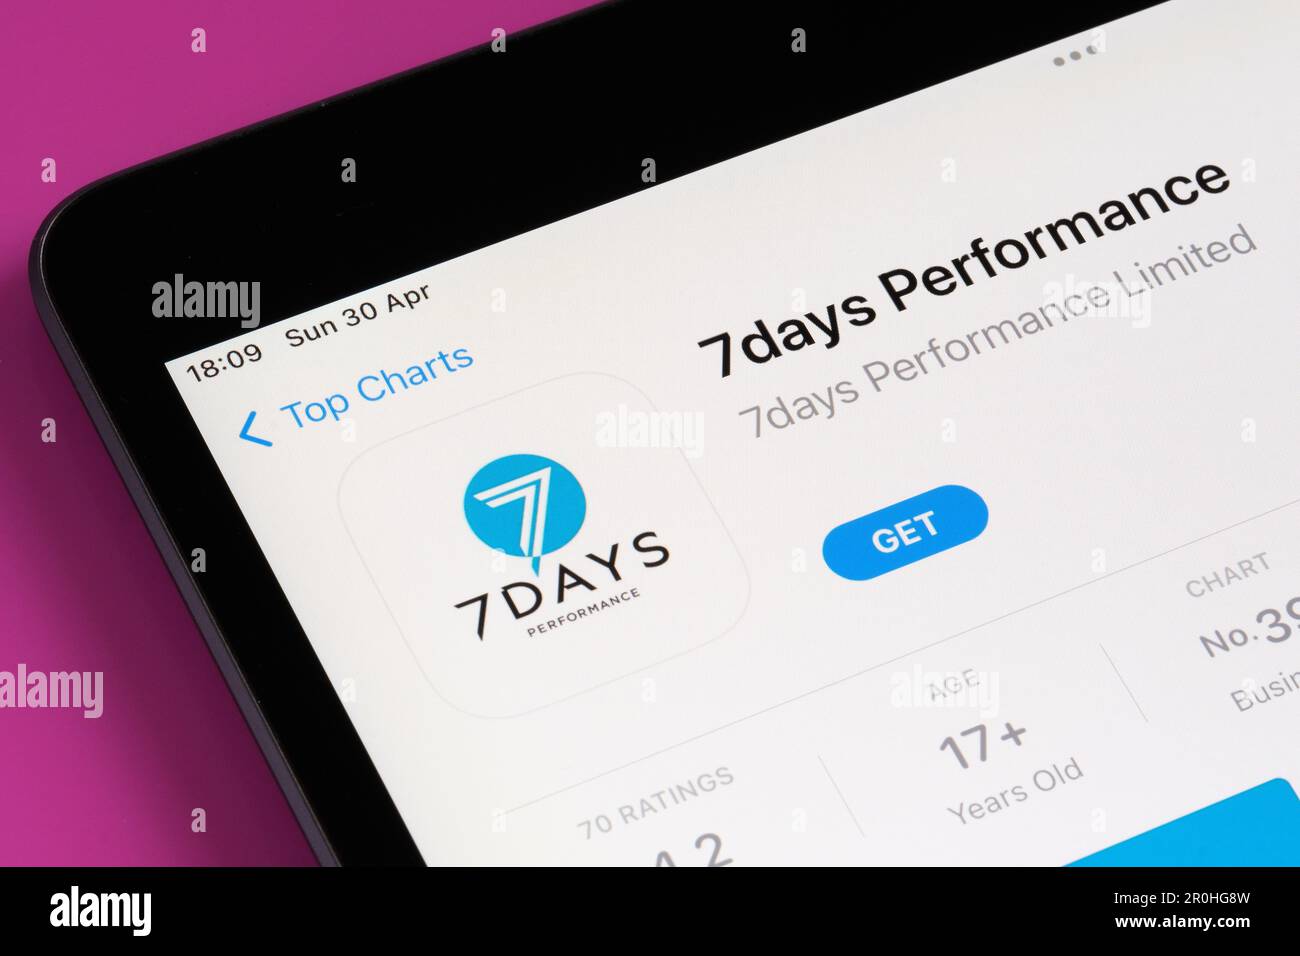 7days application performances vue sur l'App Store sur l'écran de l'ipad. Mise au point sélective. Stafford, Royaume-Uni, 6 mai 2023 Banque D'Images